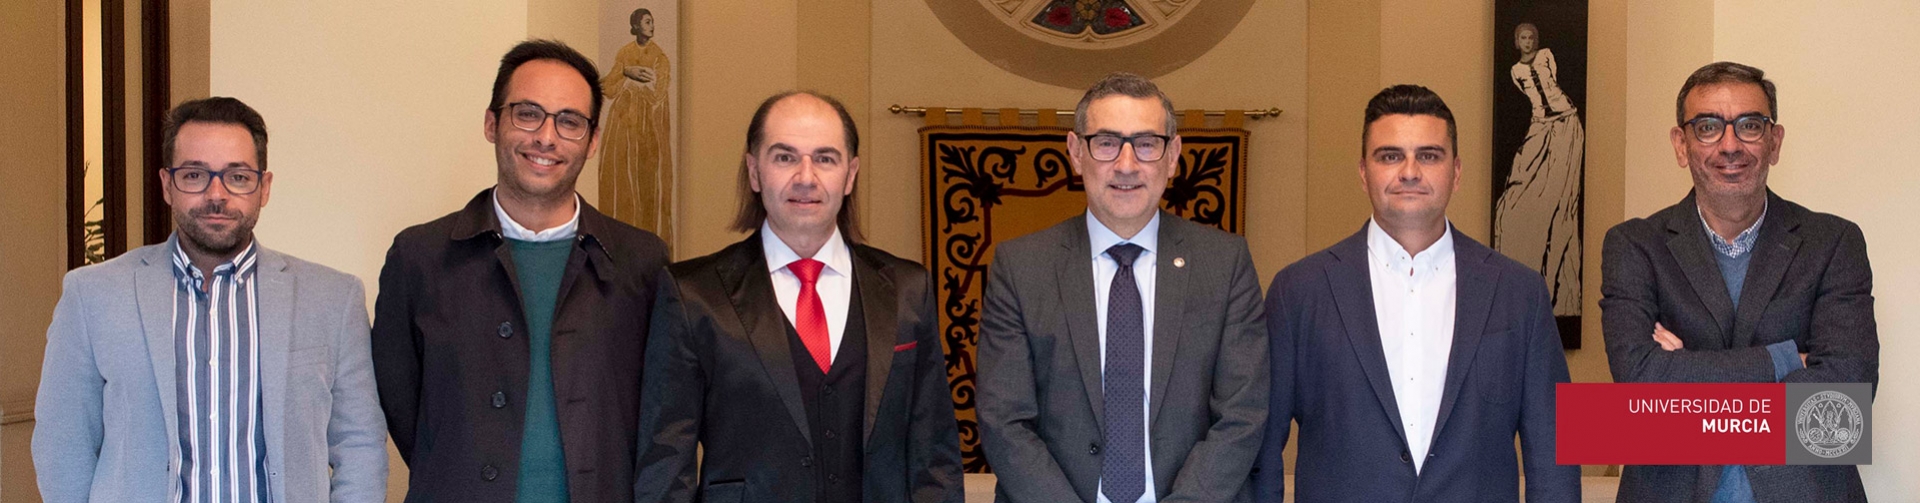 Pupilpro y la Universidad de Murcia firman un acuerdo que potenciará la innovación educativa